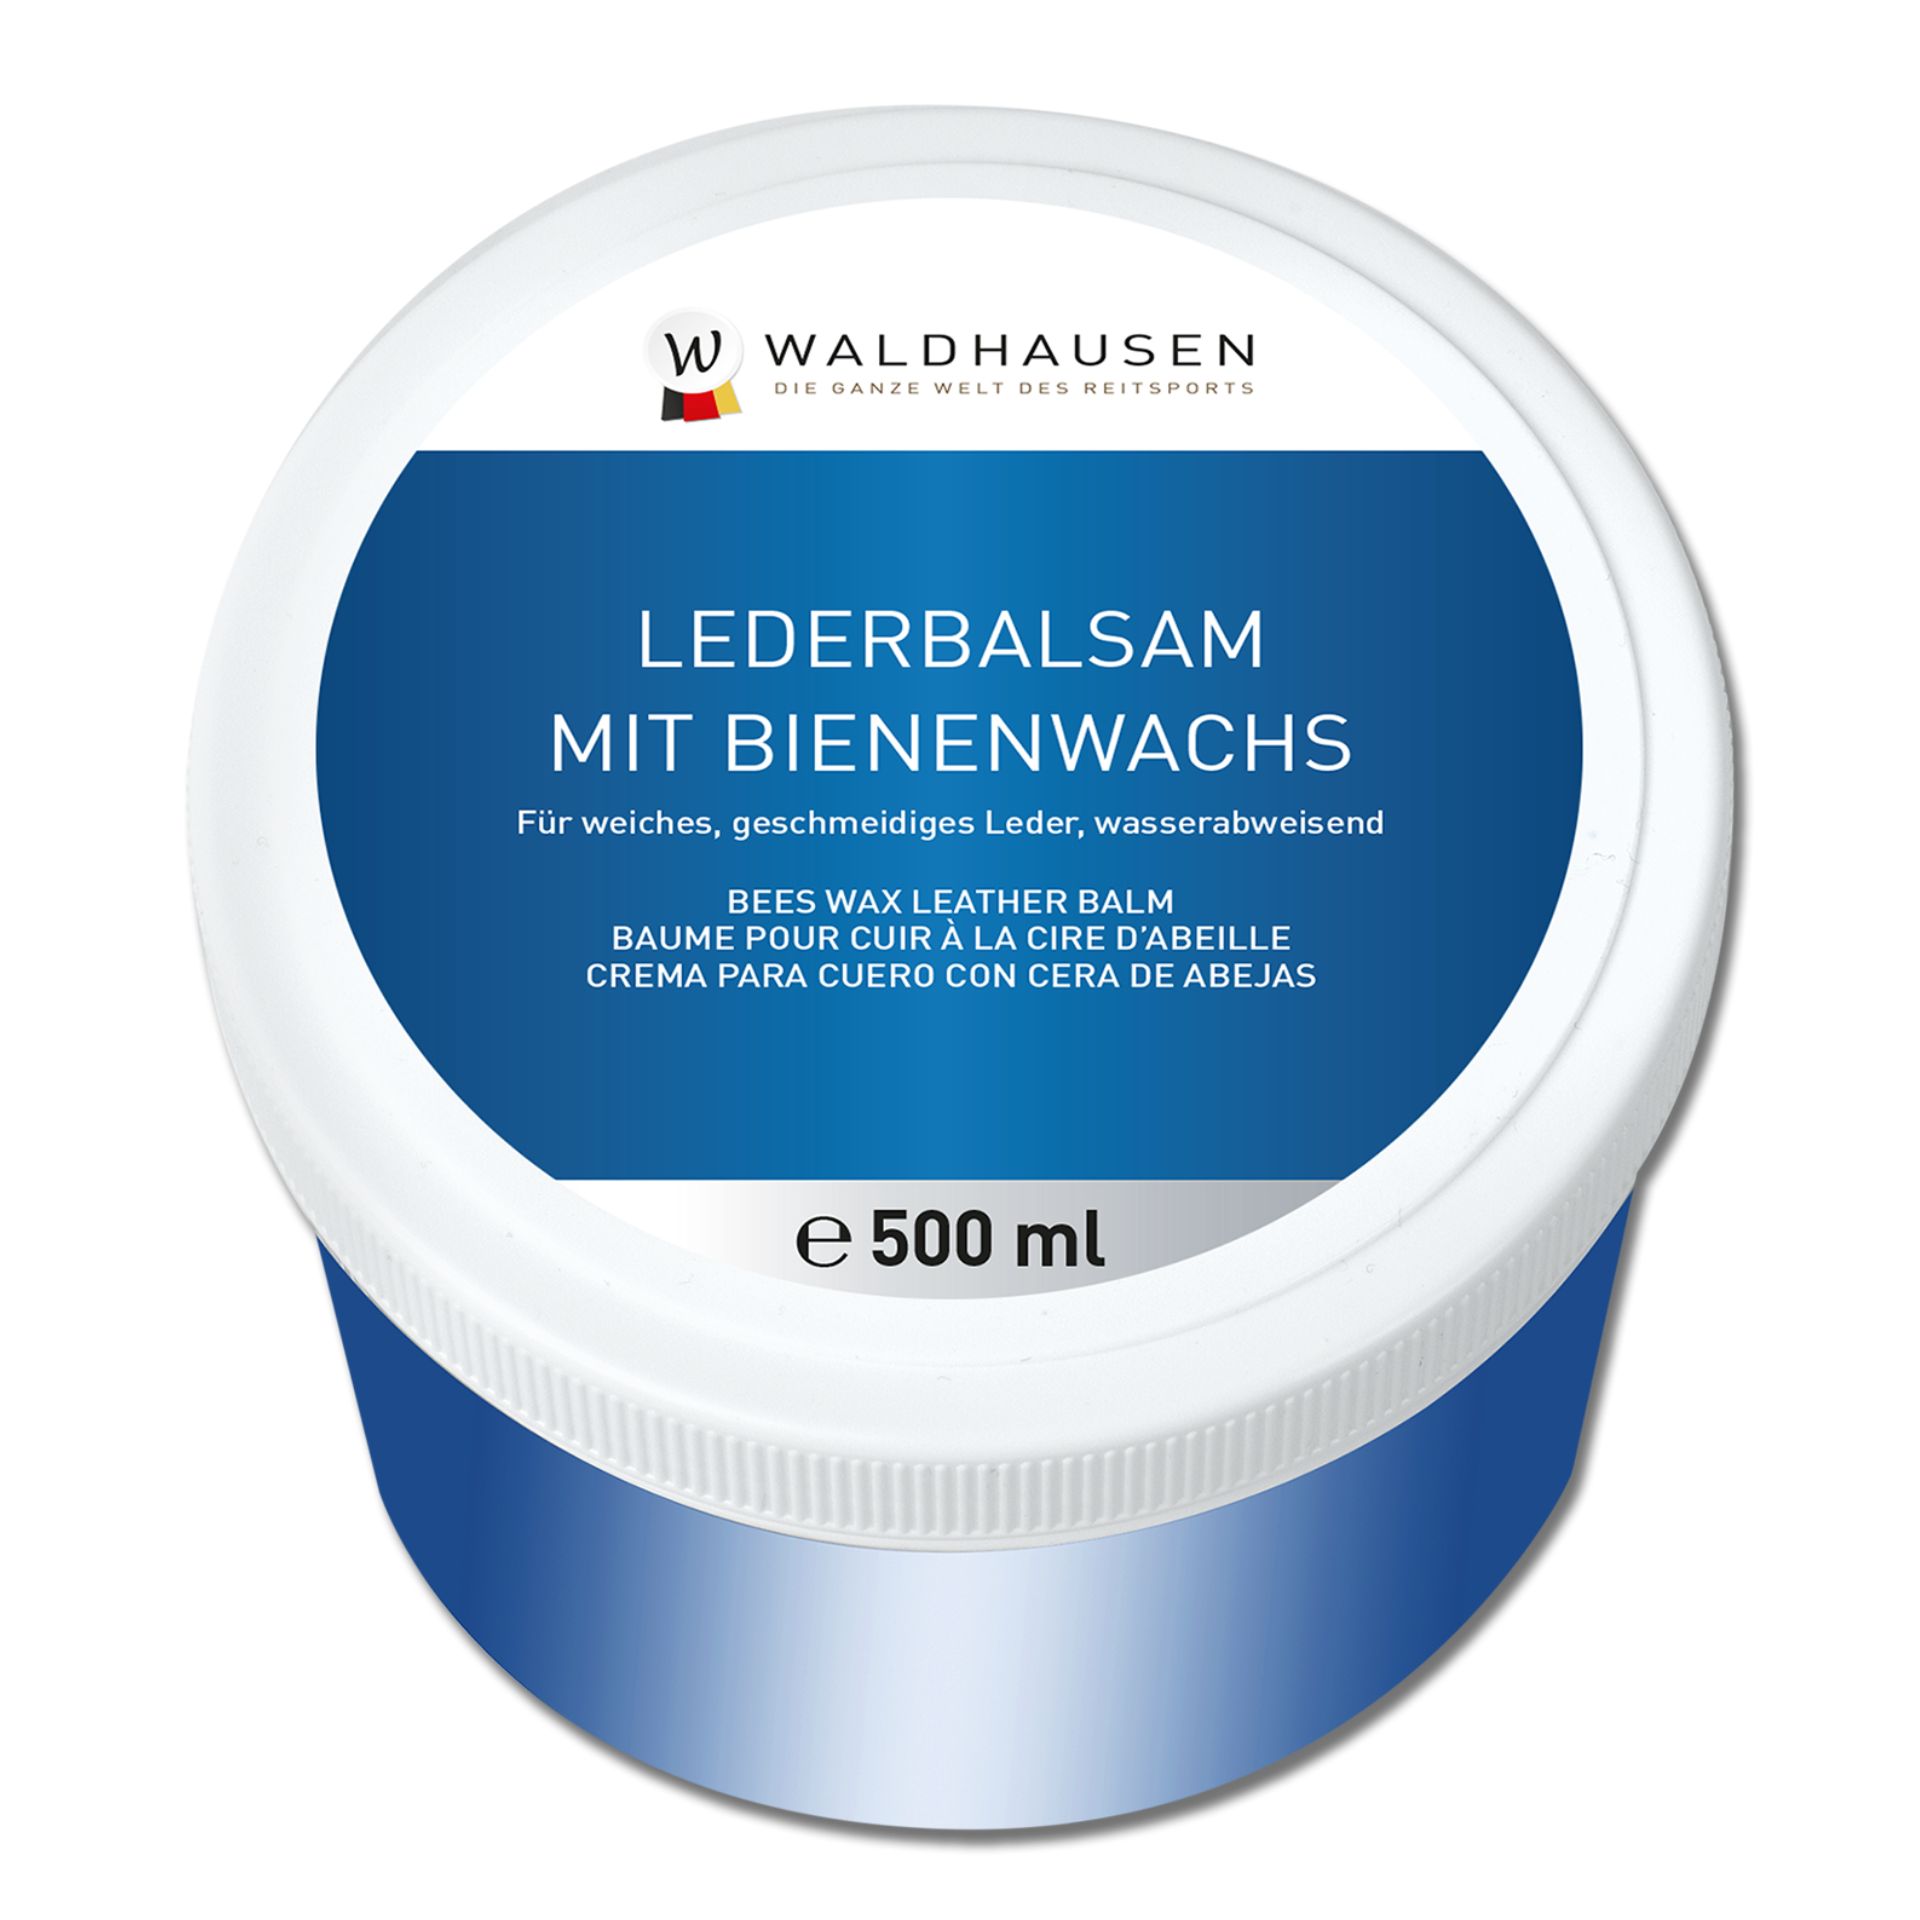 Waldhausen Bienenwachs Lederbalsam, 500 ml